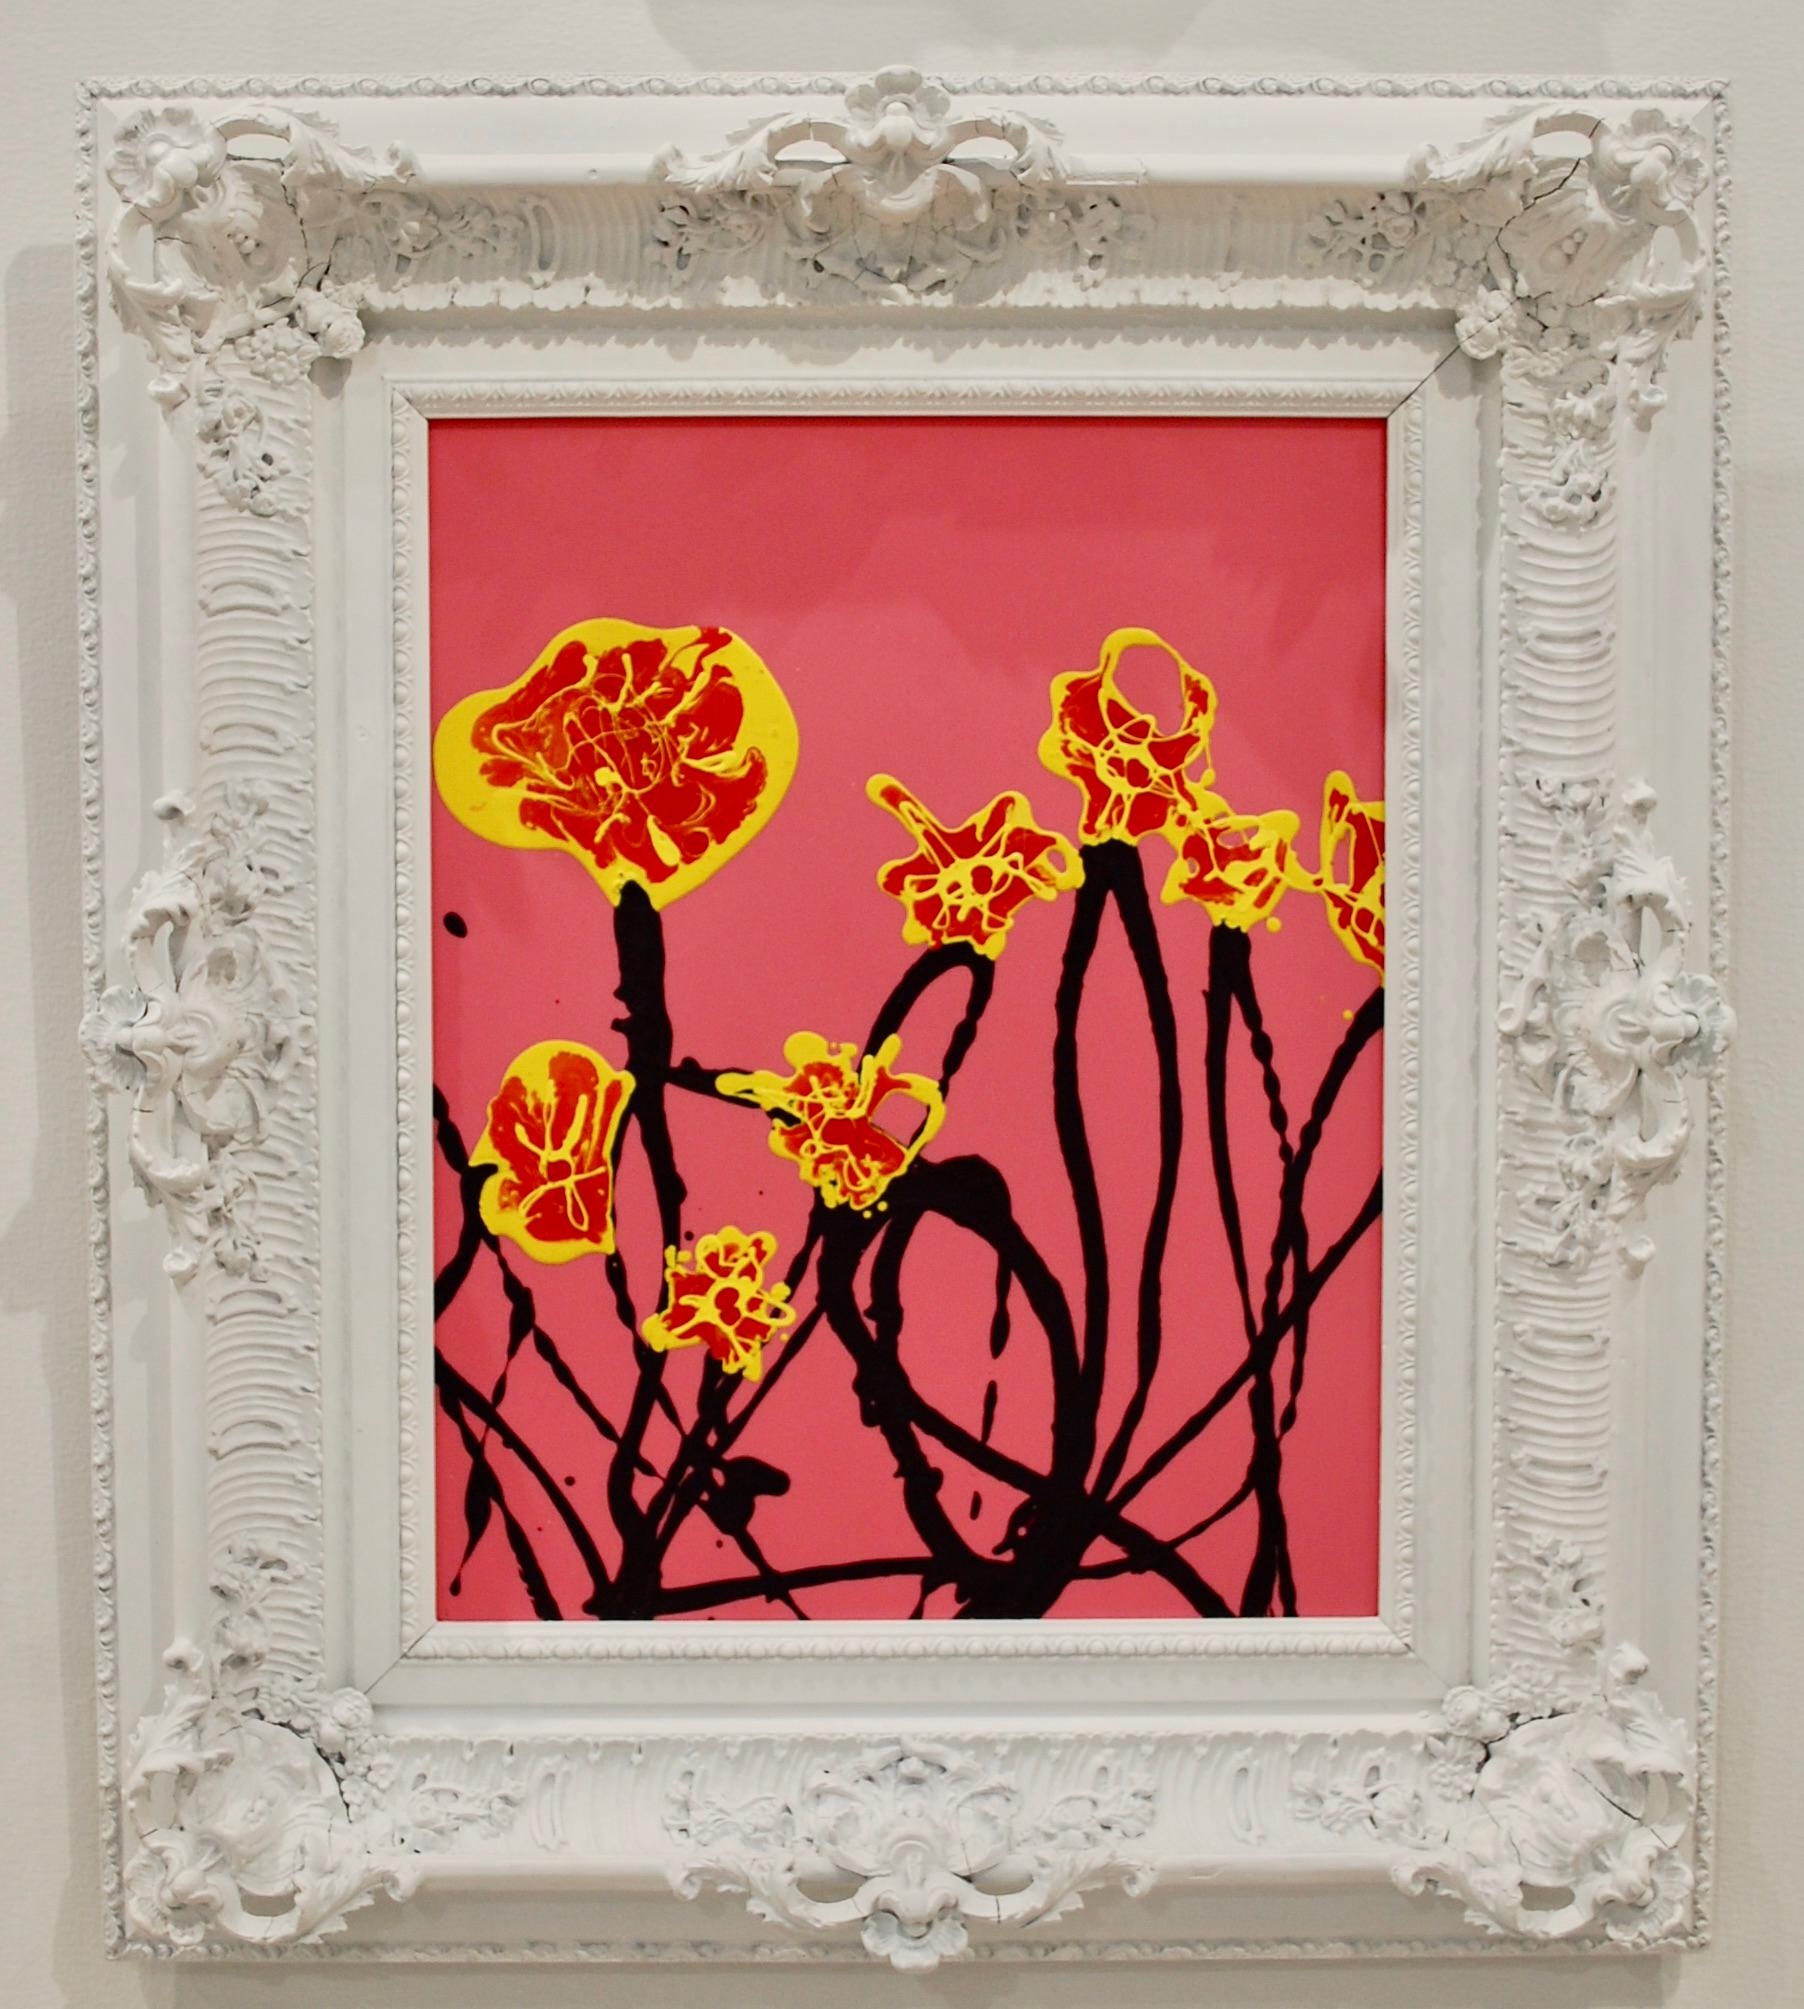 Wiled Blumen in Sedona rosa abstrakte Komposition.
Emailliert auf Lexanplatte, antikweiß lackierter Rahmen. 
Randi Grantham ist in Las Vegas, Nevada, geboren und aufgewachsen. Aus dieser Stadt ist ein Künstler hervorgegangen, dessen grenzenlose